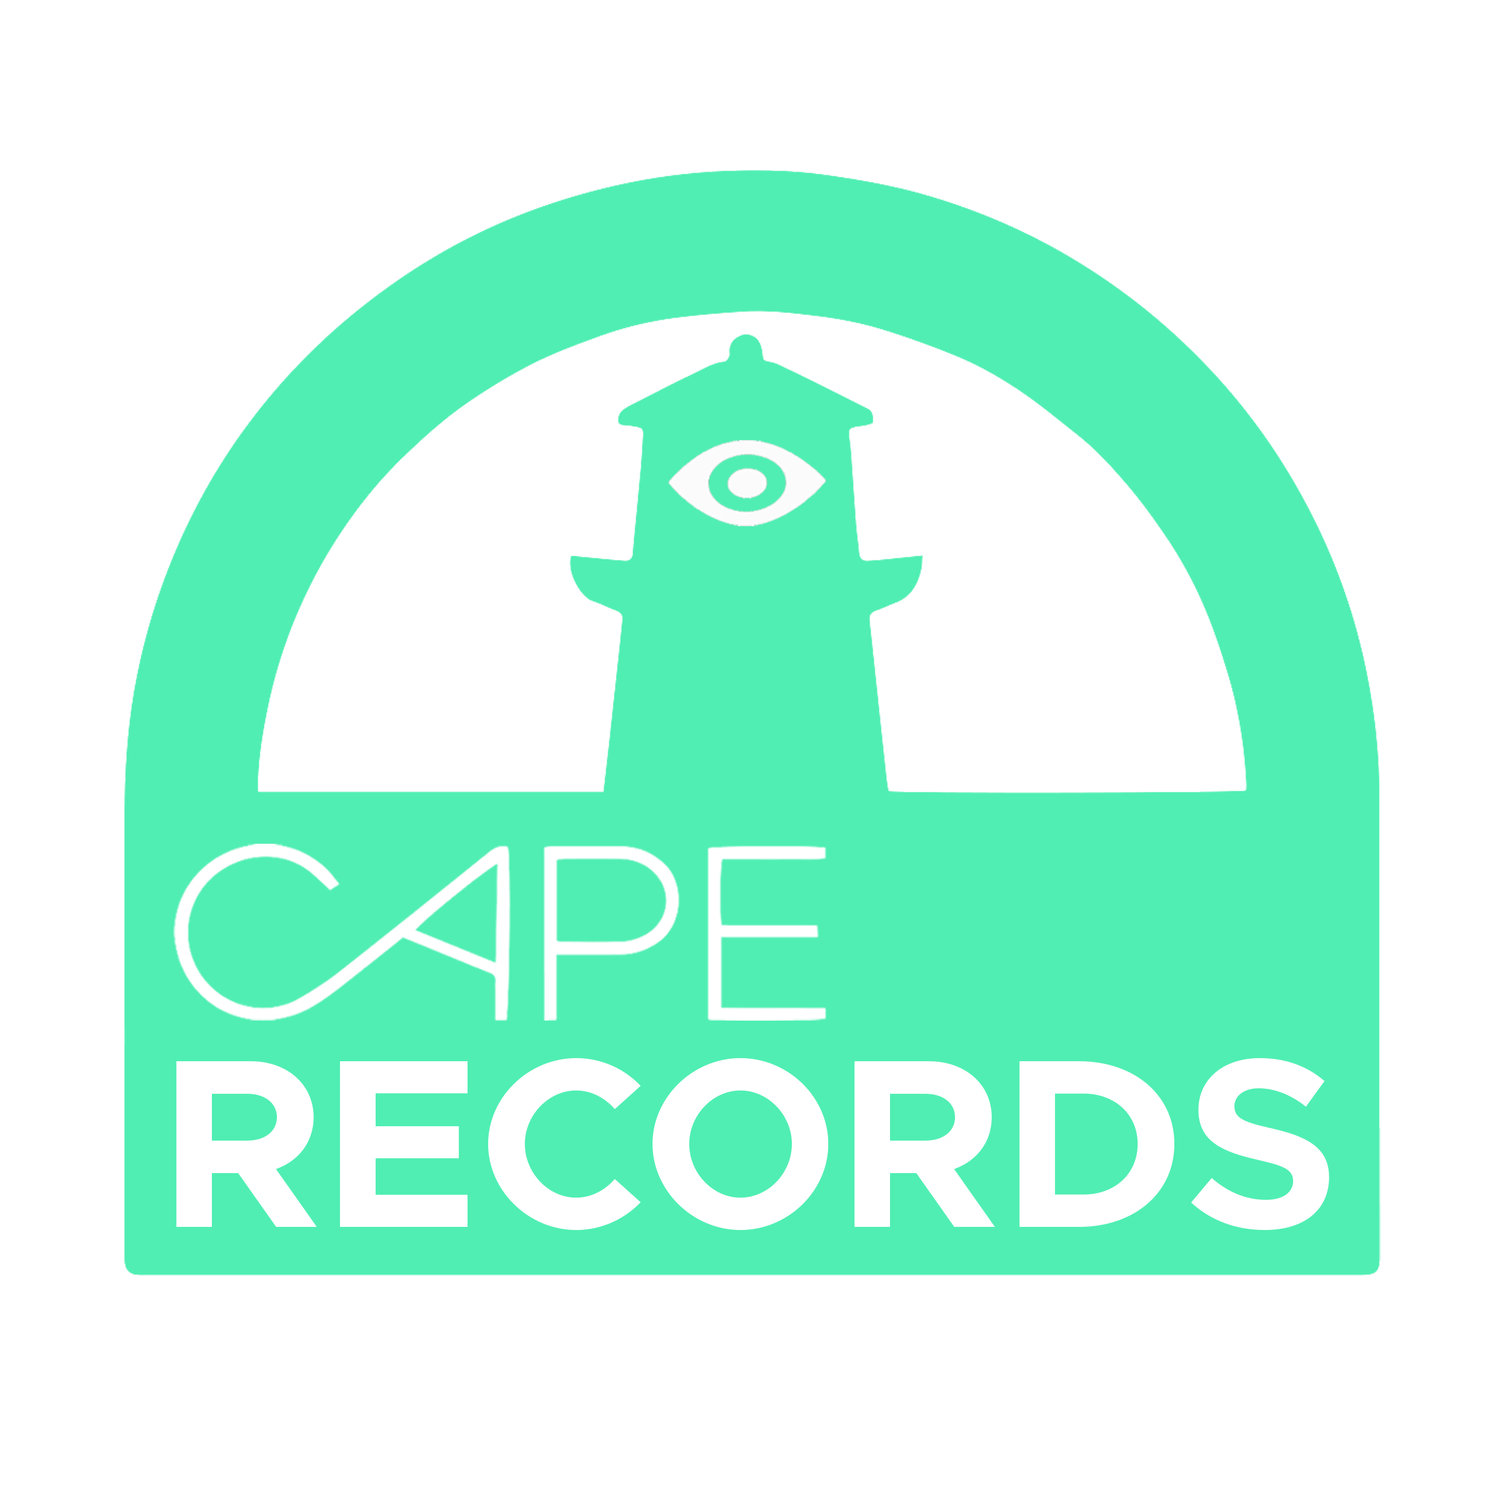 CAPE RECORDS